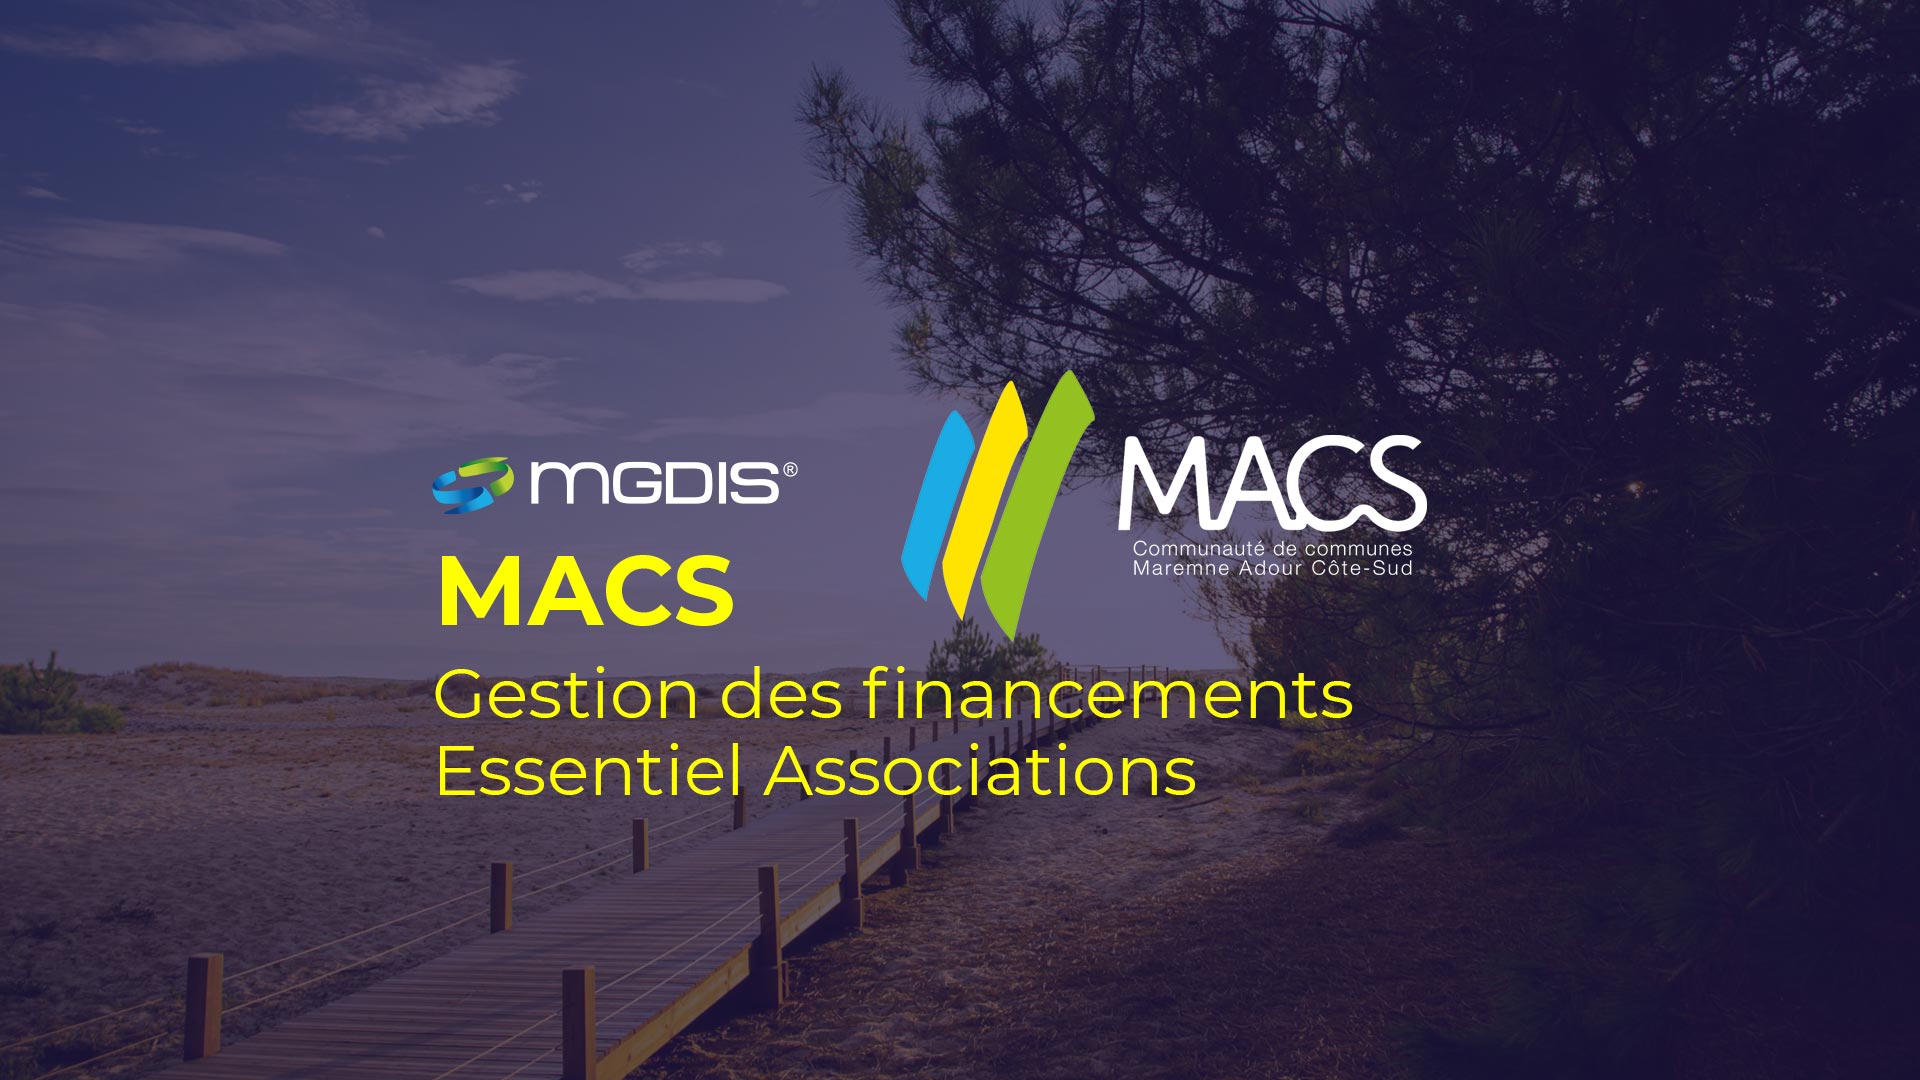 MACS - Communauté de communes Maremne Adour Côte Sud et MGDIS 2022